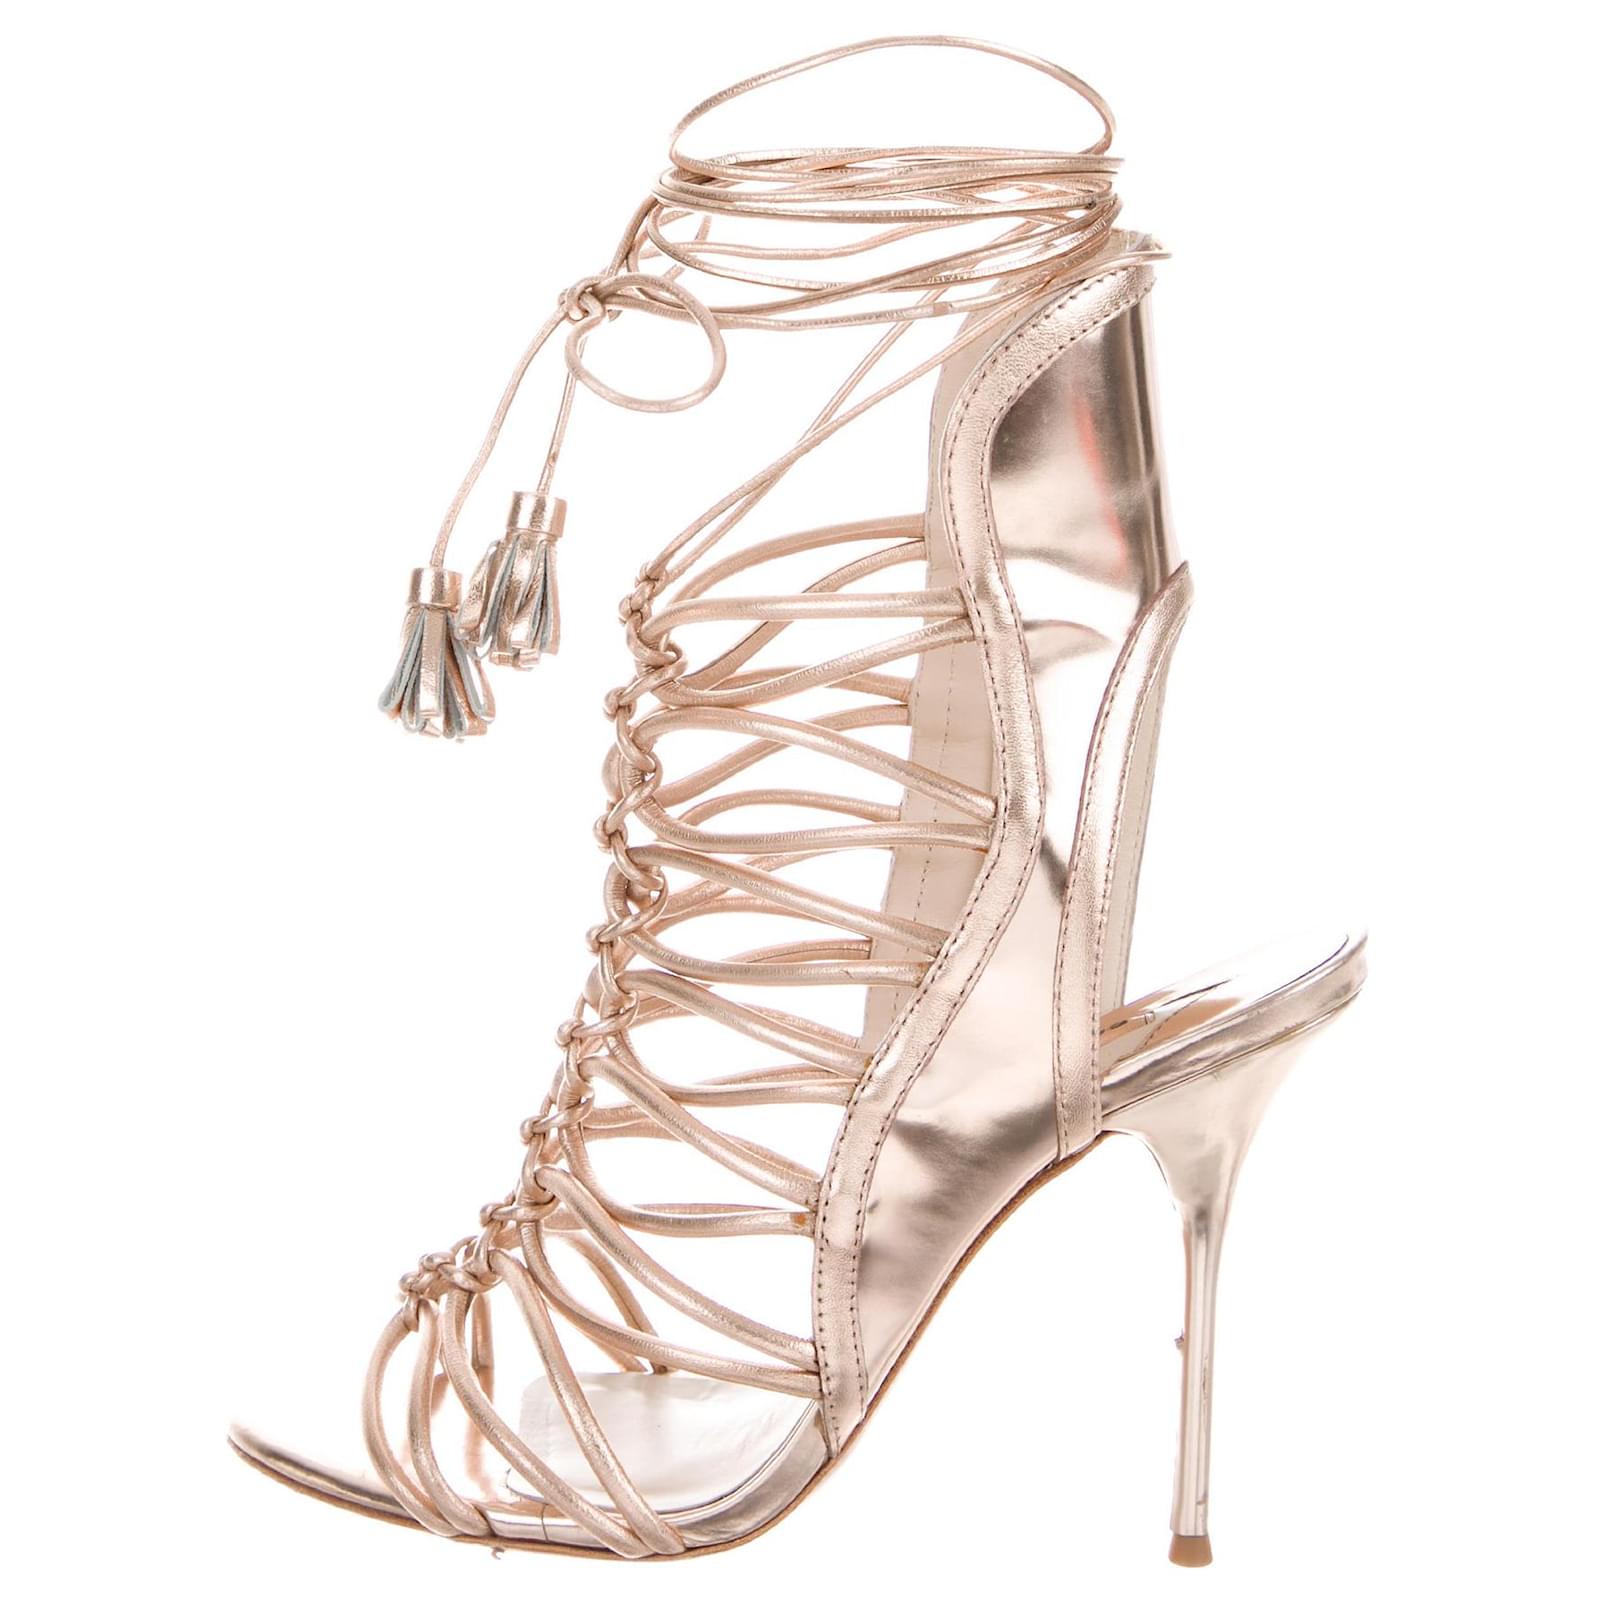 sophia webster heels price